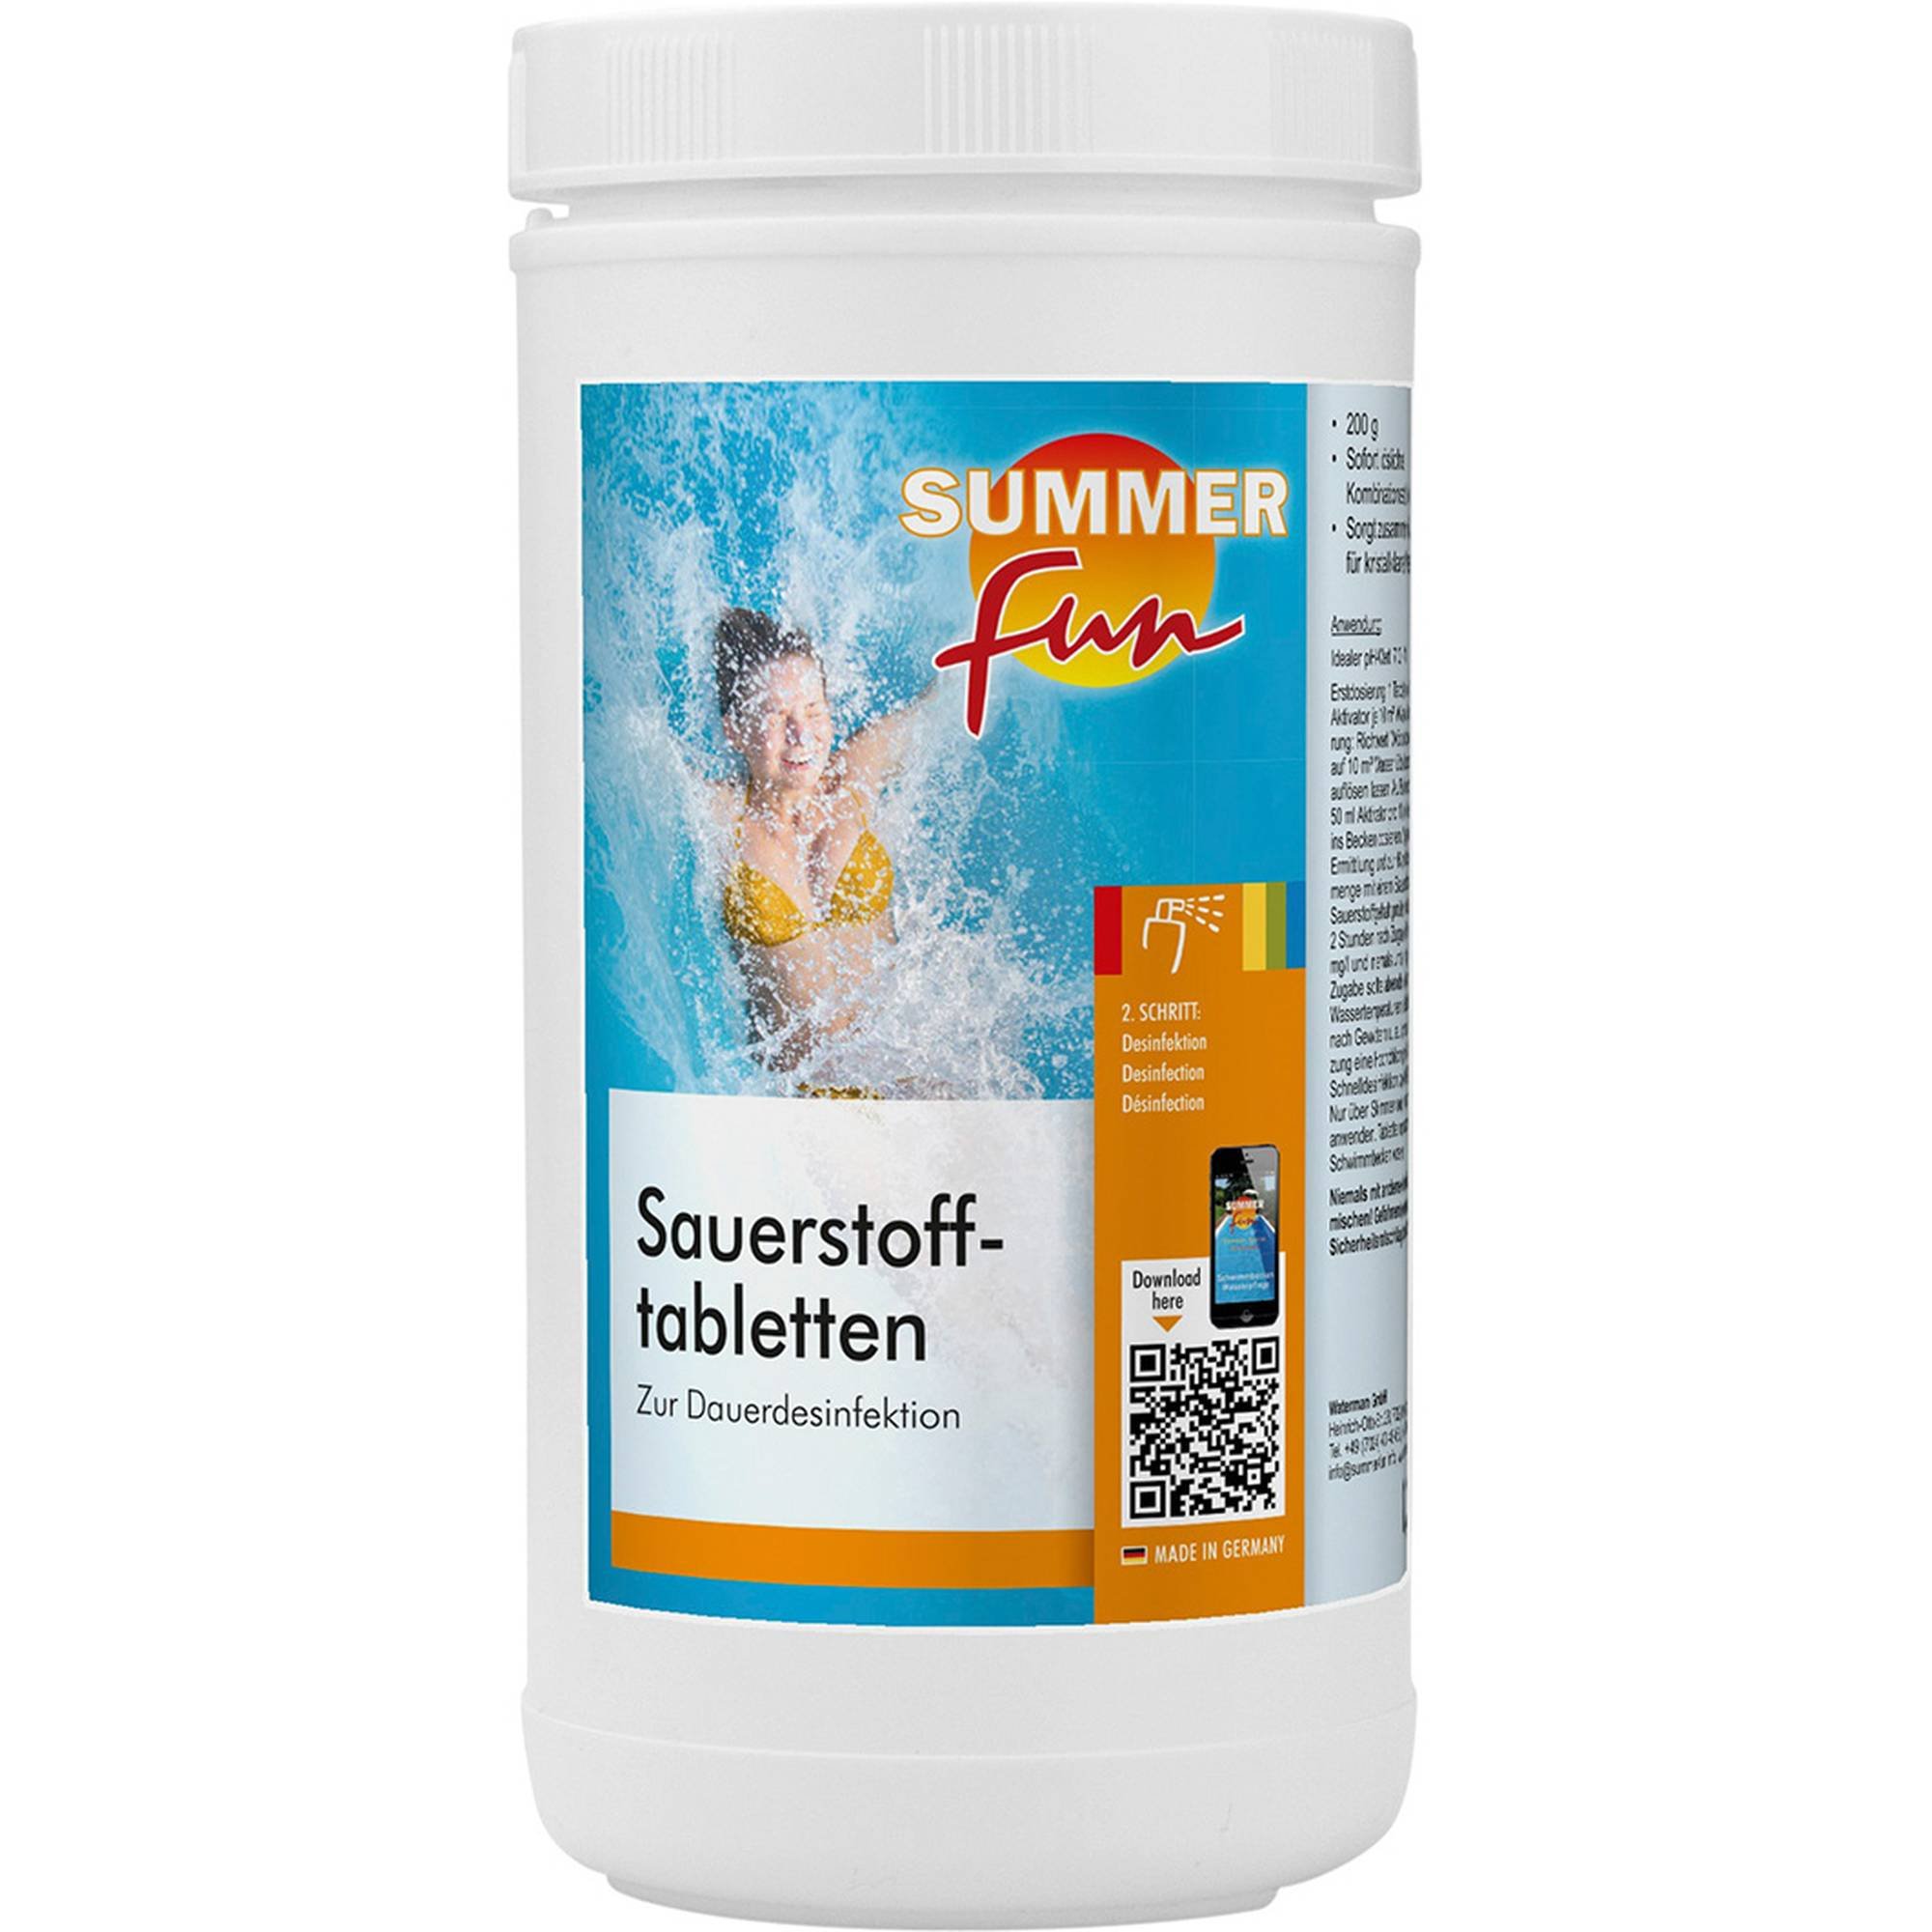 Summer Fun Sauerstofftabletten 200 g 1,2 kg